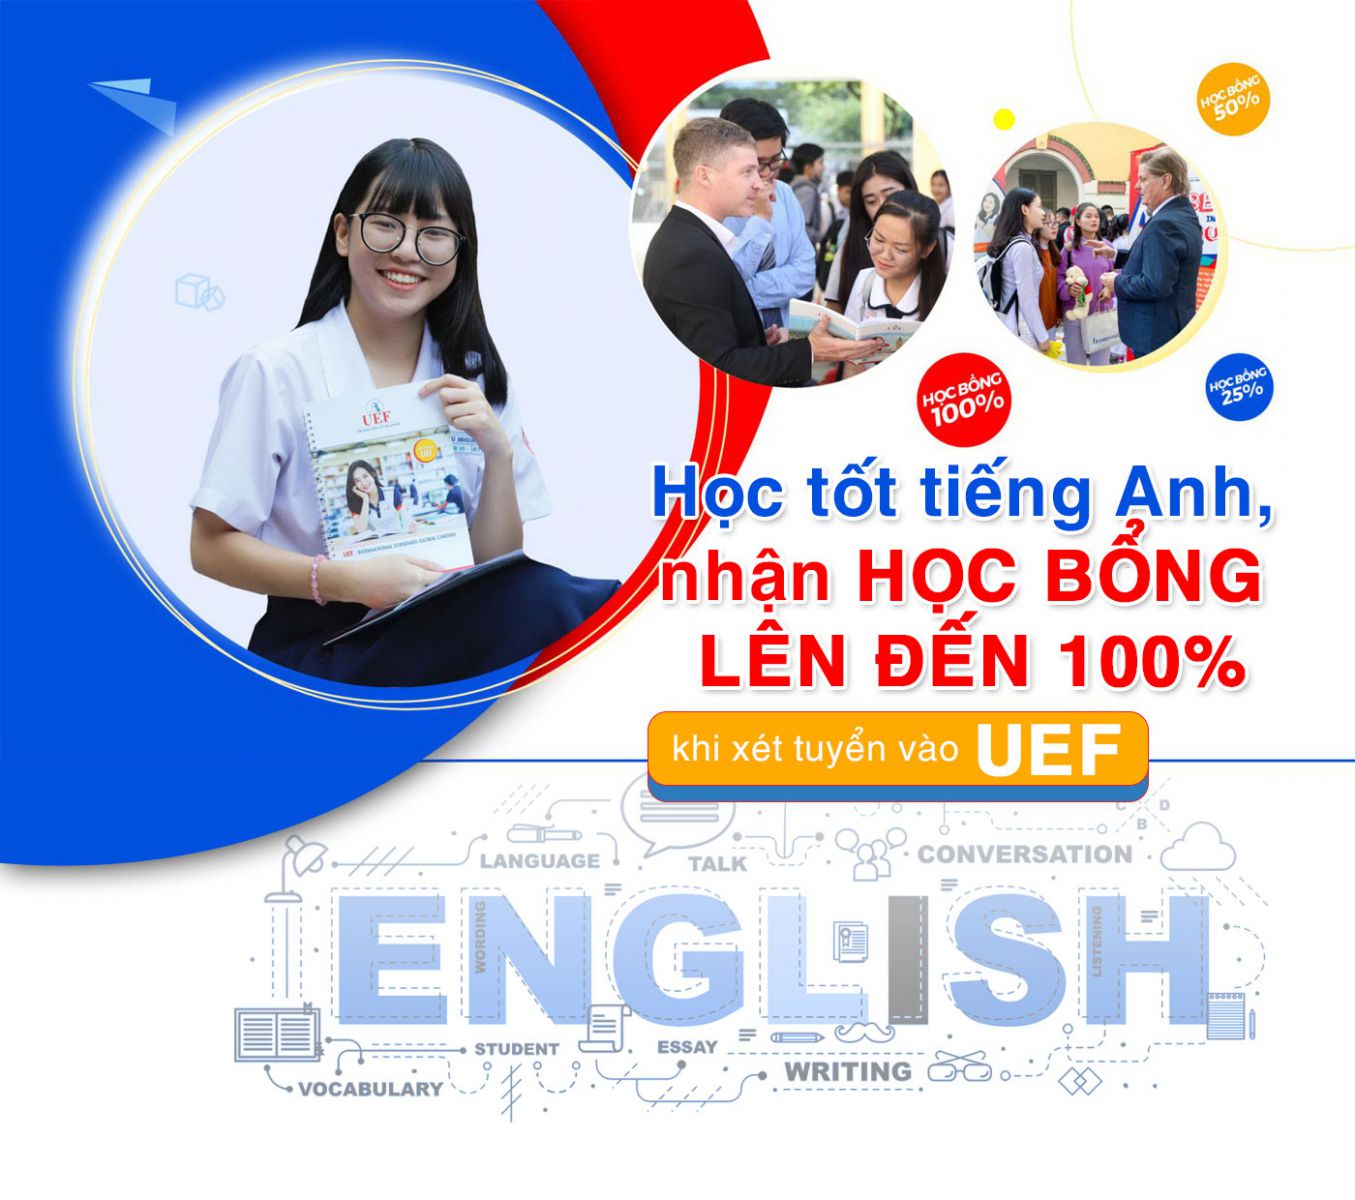 Học tốt tiếng Anh, nhận học bổng lên đến 100% khi xét tuyển vào UEF - Ảnh 1